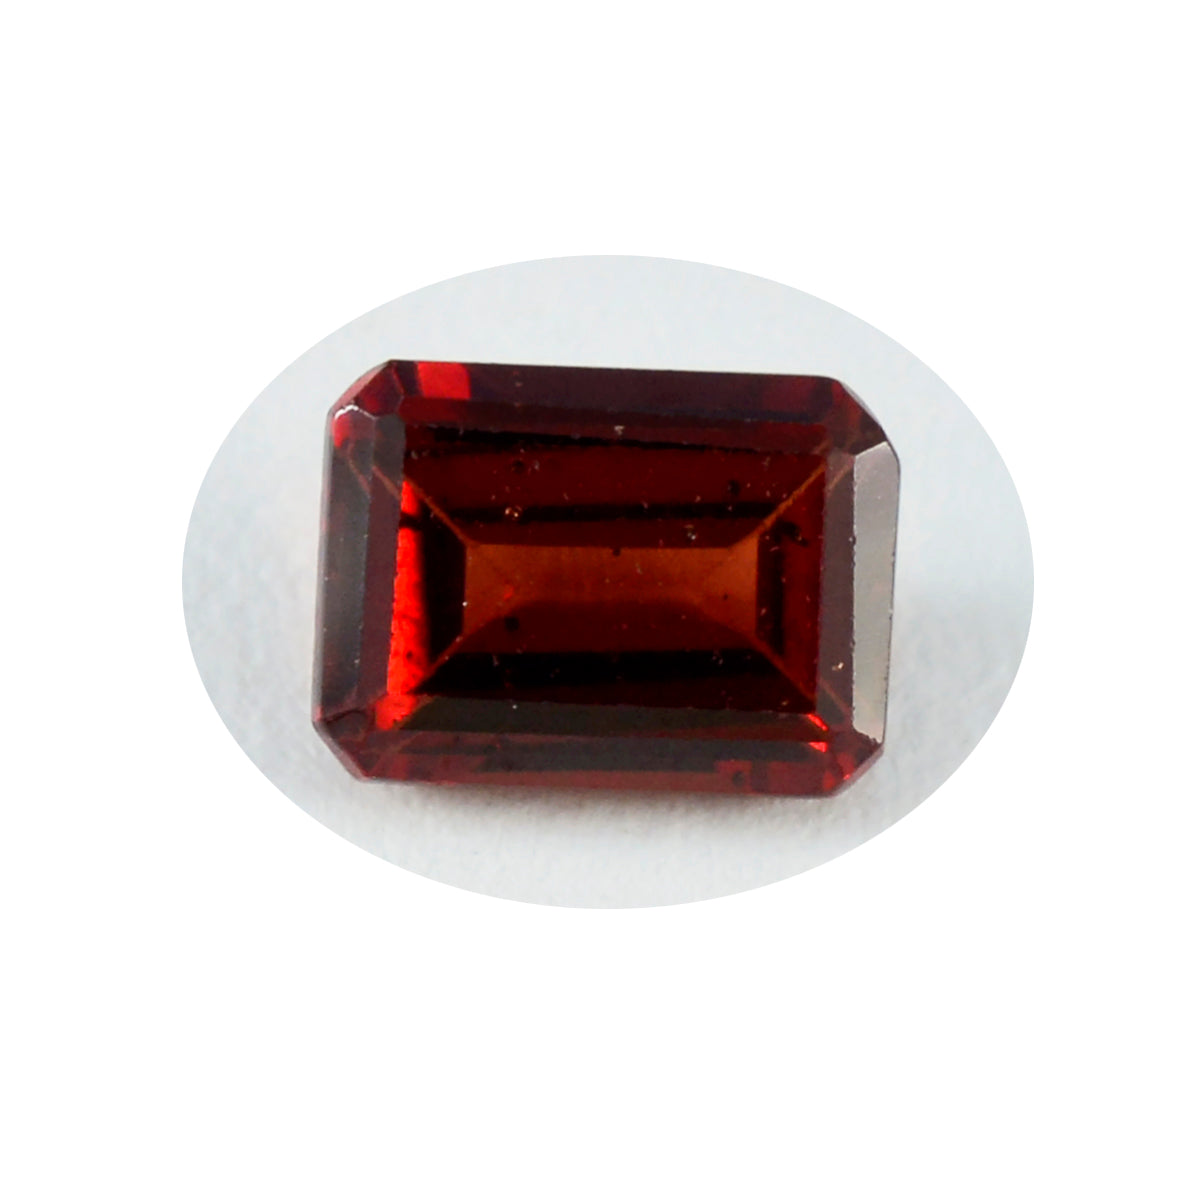 riyogems 1 шт. натуральный красный гранат ограненный 10х12 мм восьмиугольной формы, красивые качественные драгоценные камни